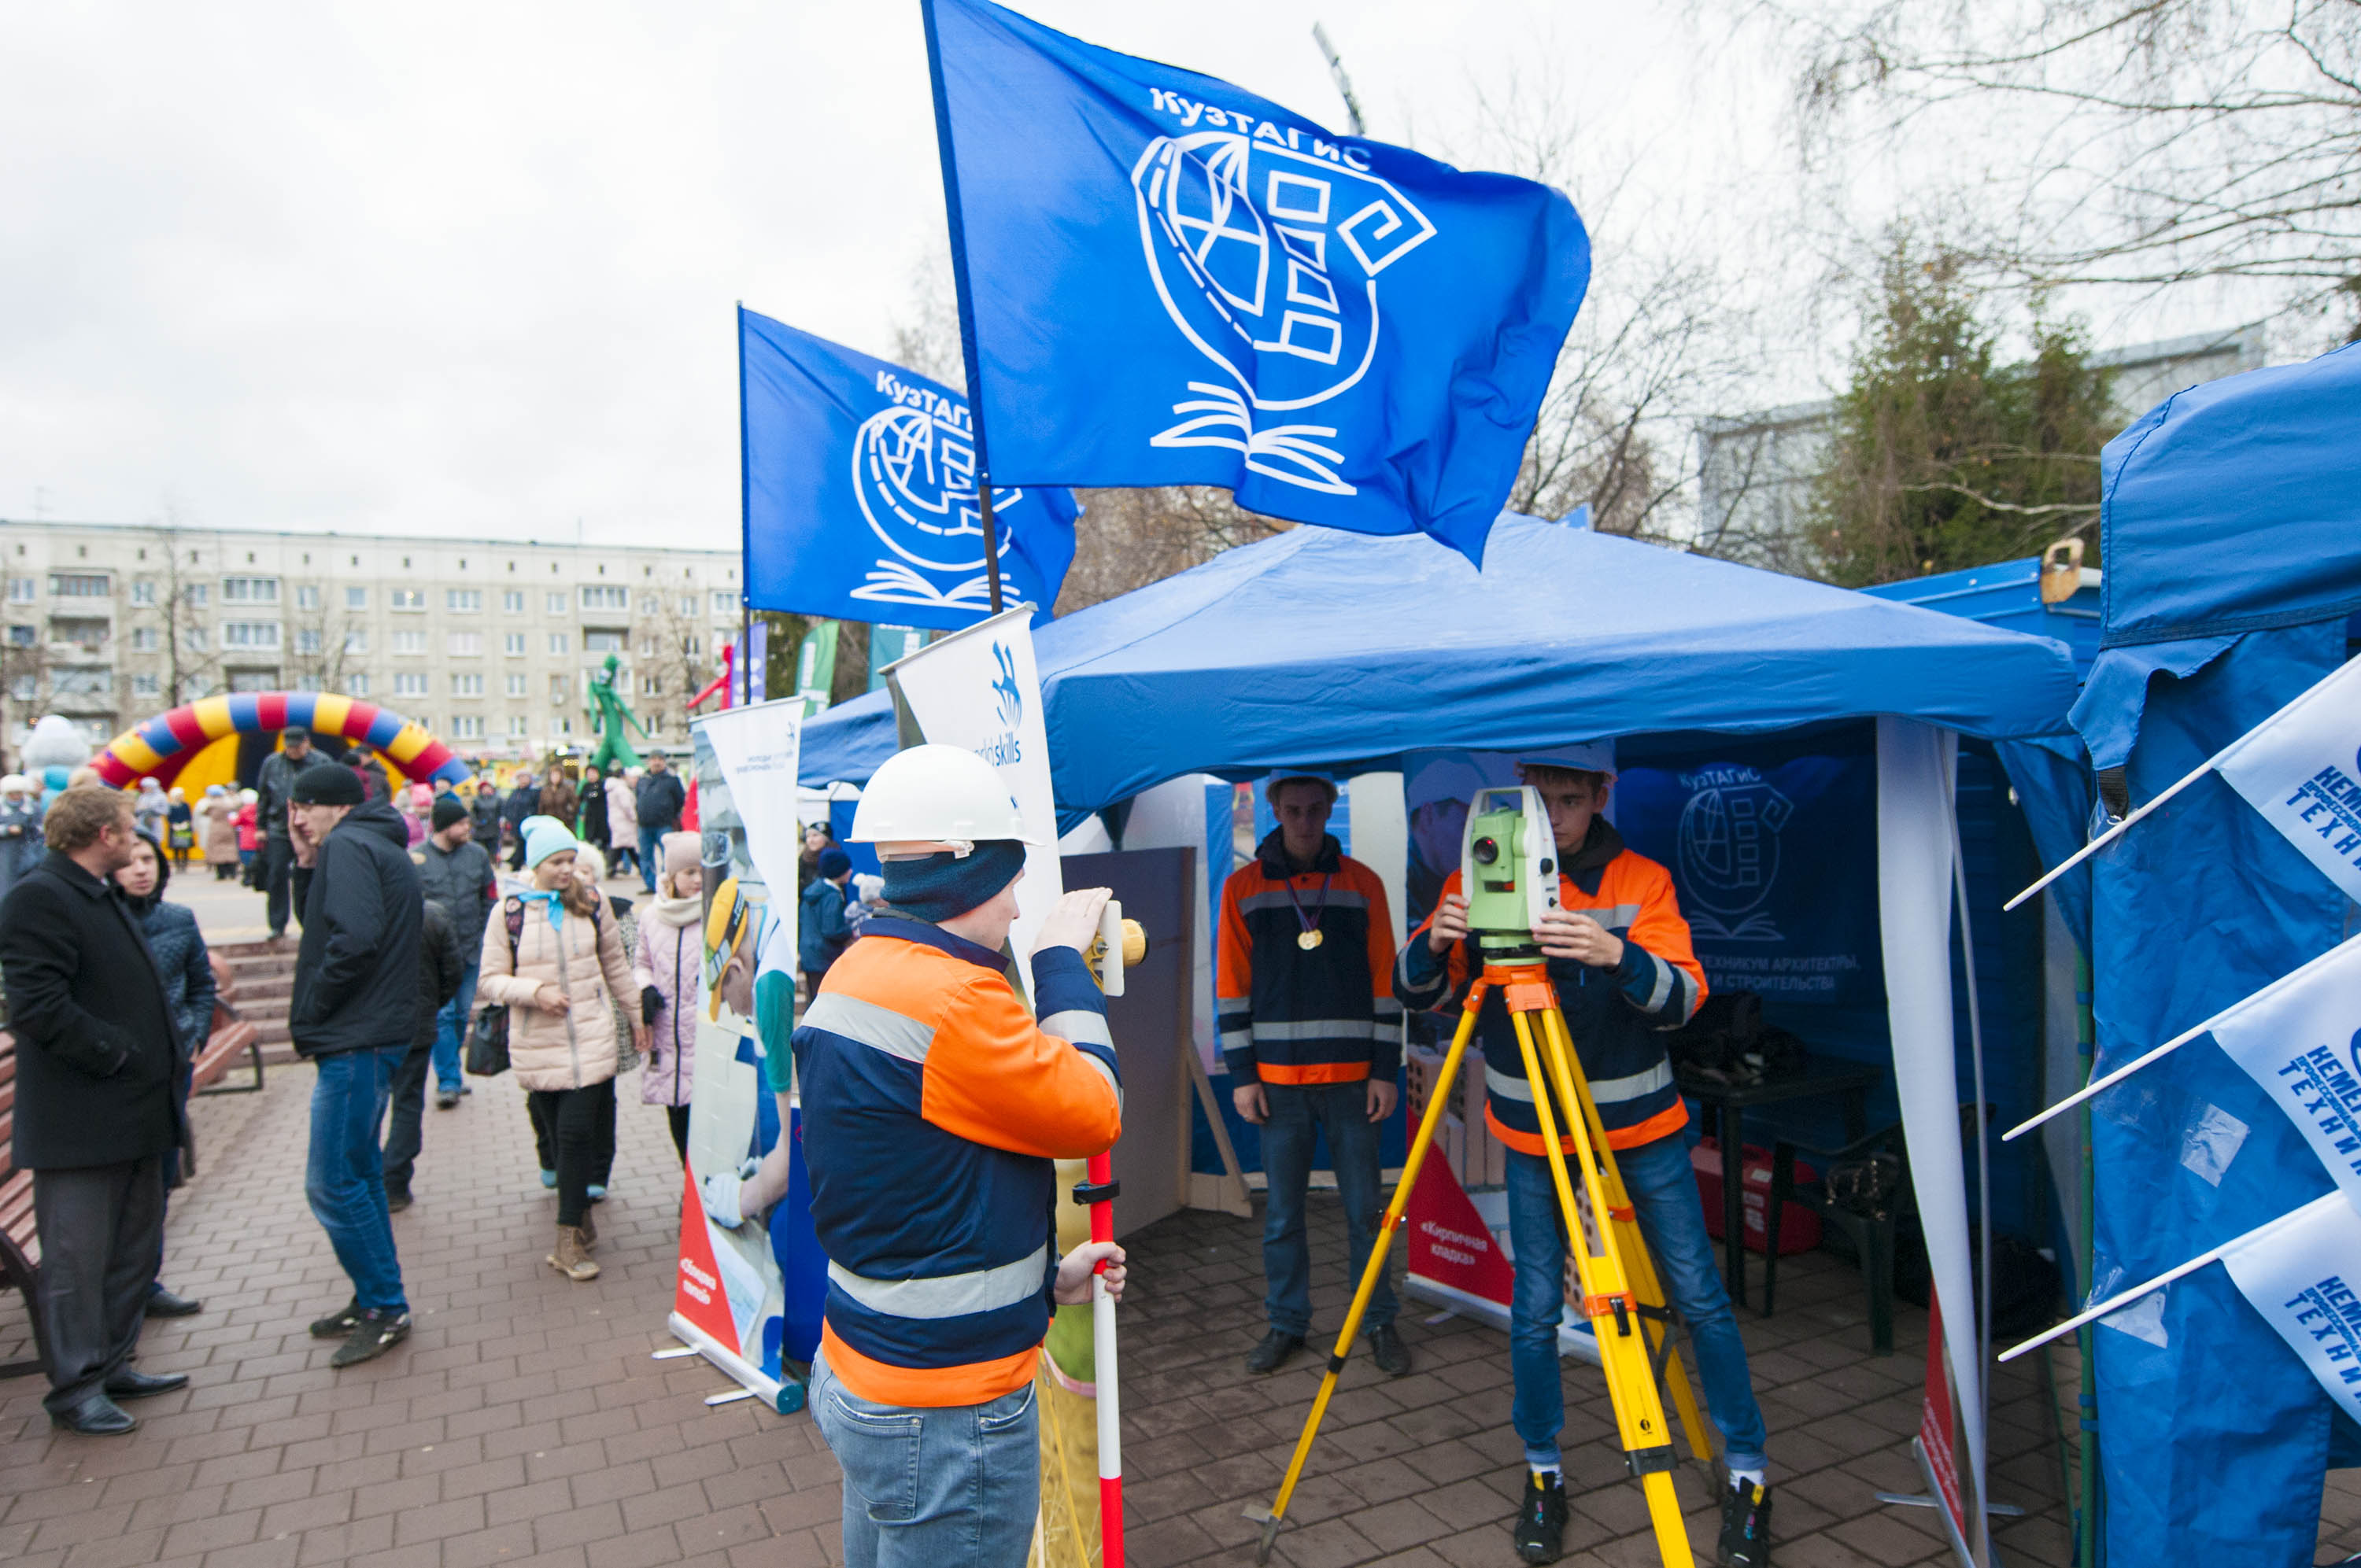 Профессиональные образовательные организации Кузбасса приняли участие в торжественном открытии бульвара Строителей в г. Кемерово